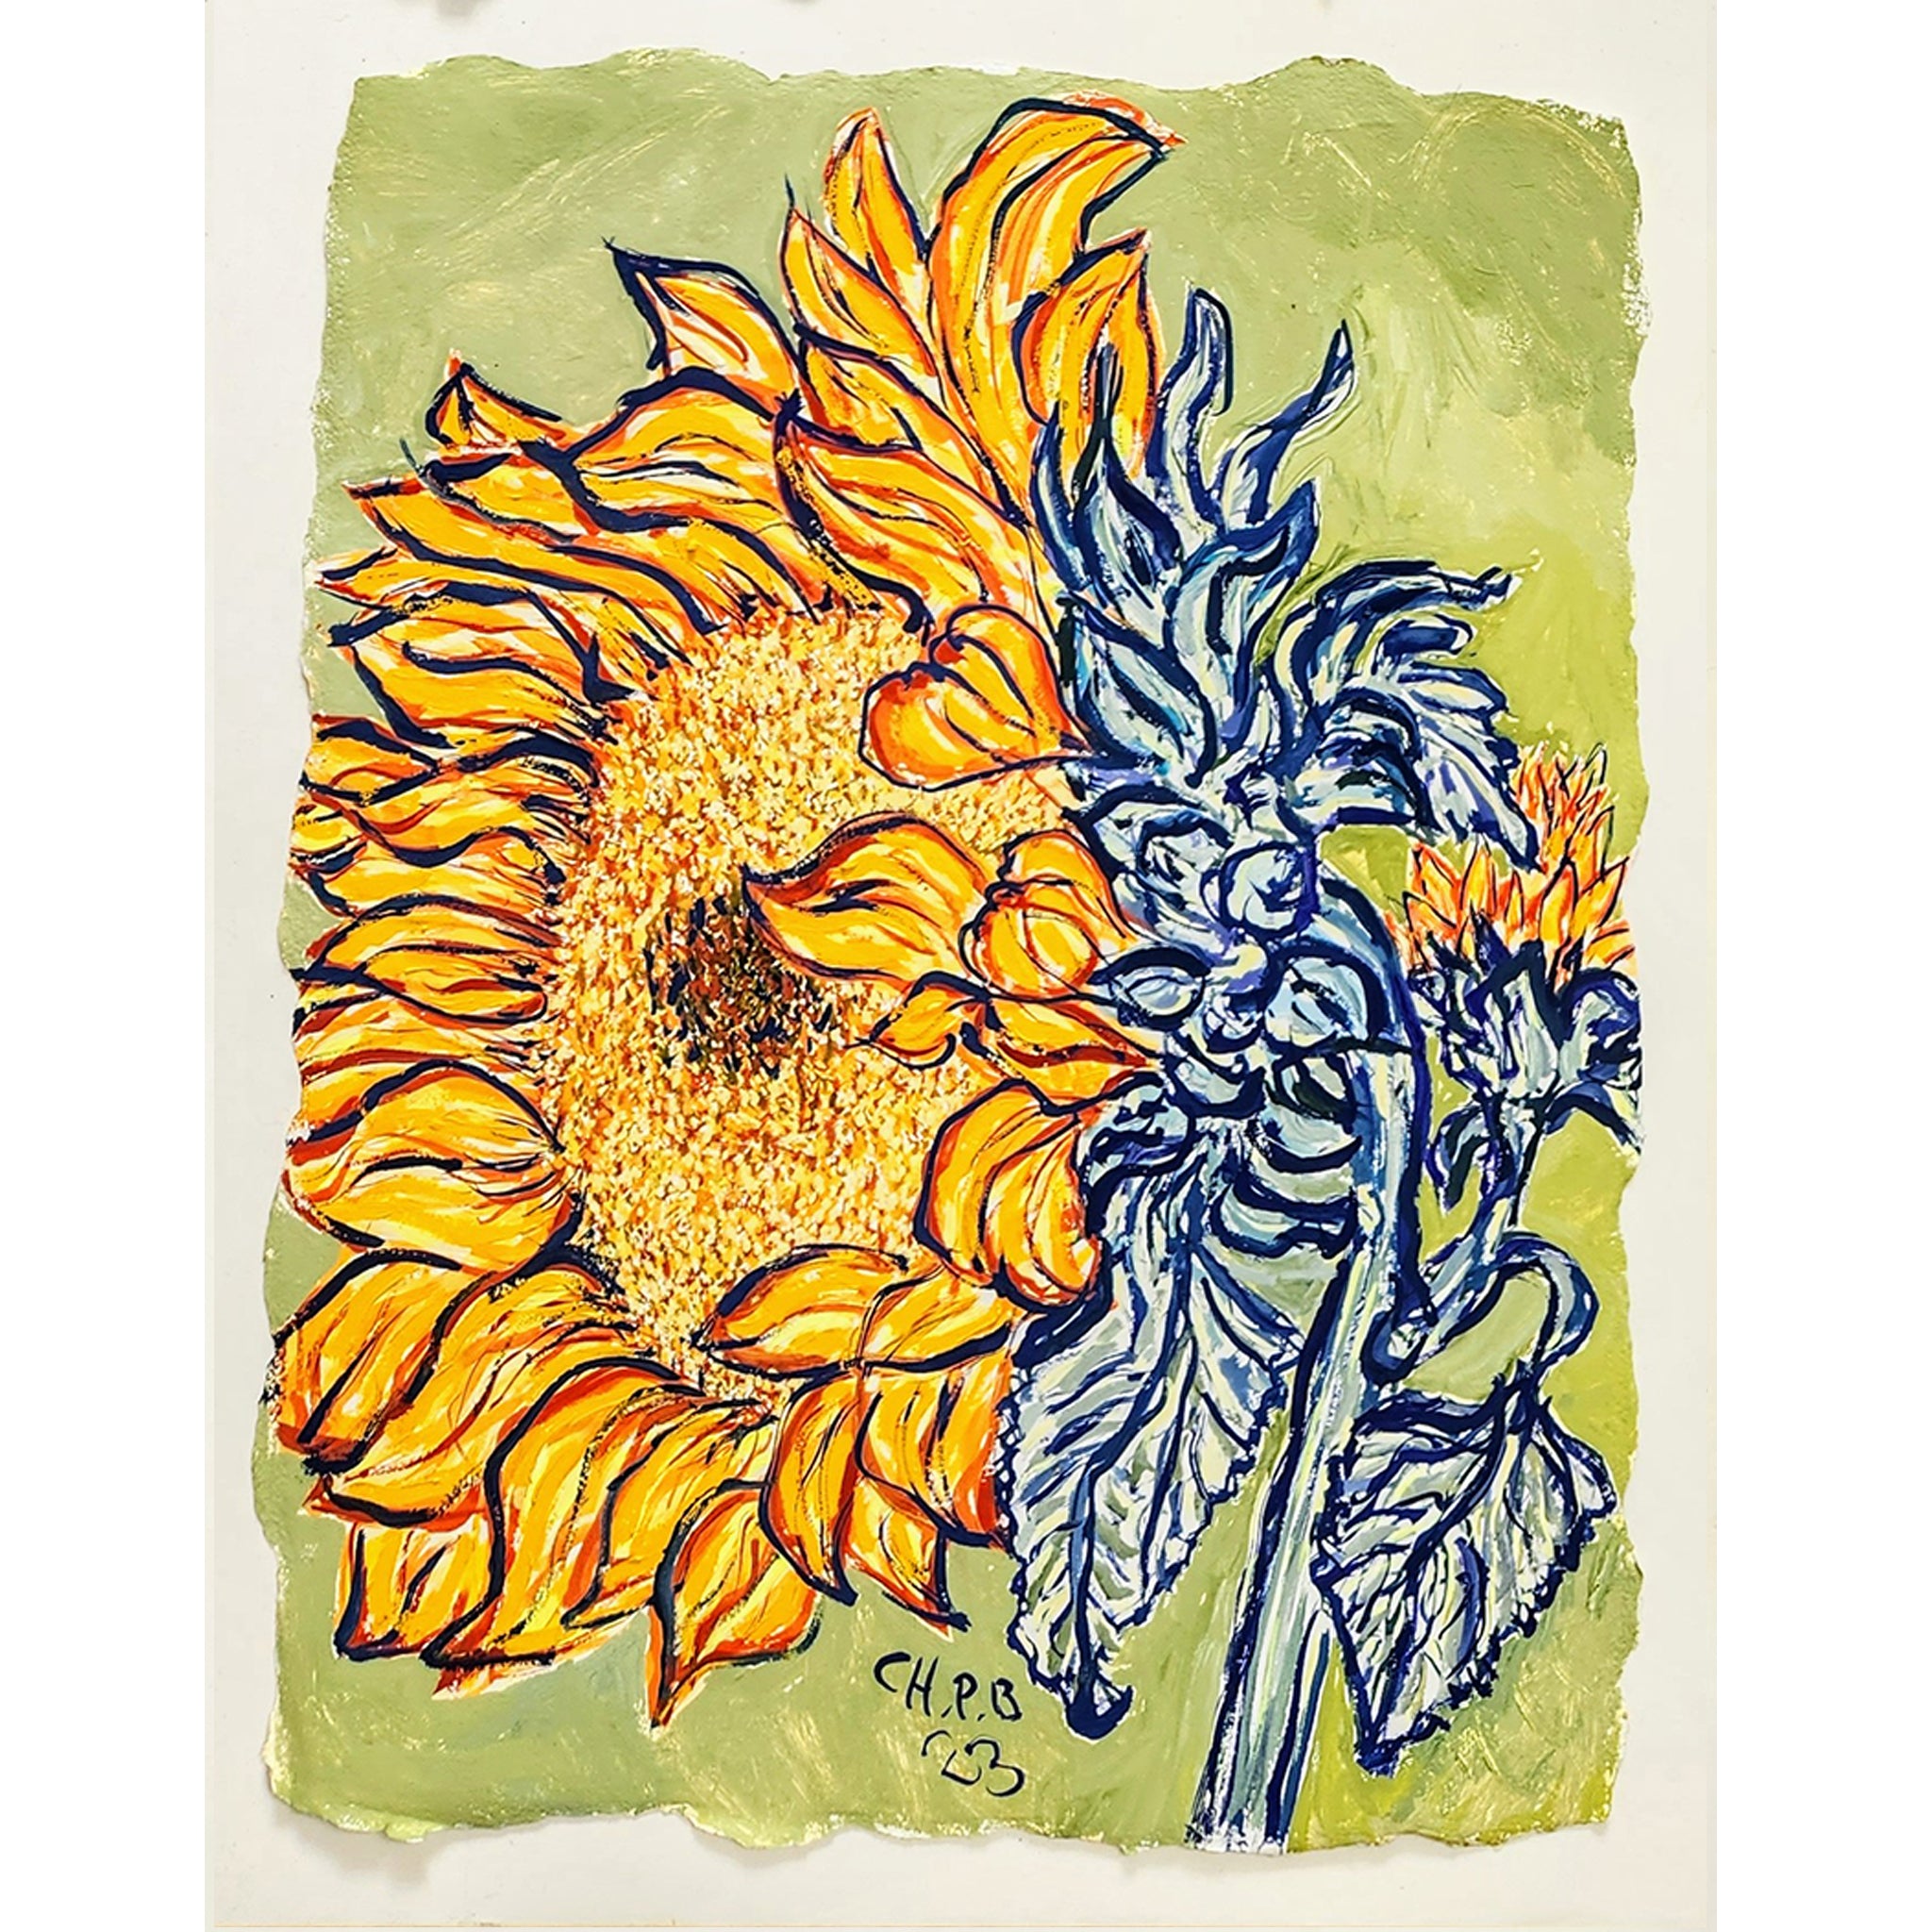 Christian Brechneff, Sunflowers